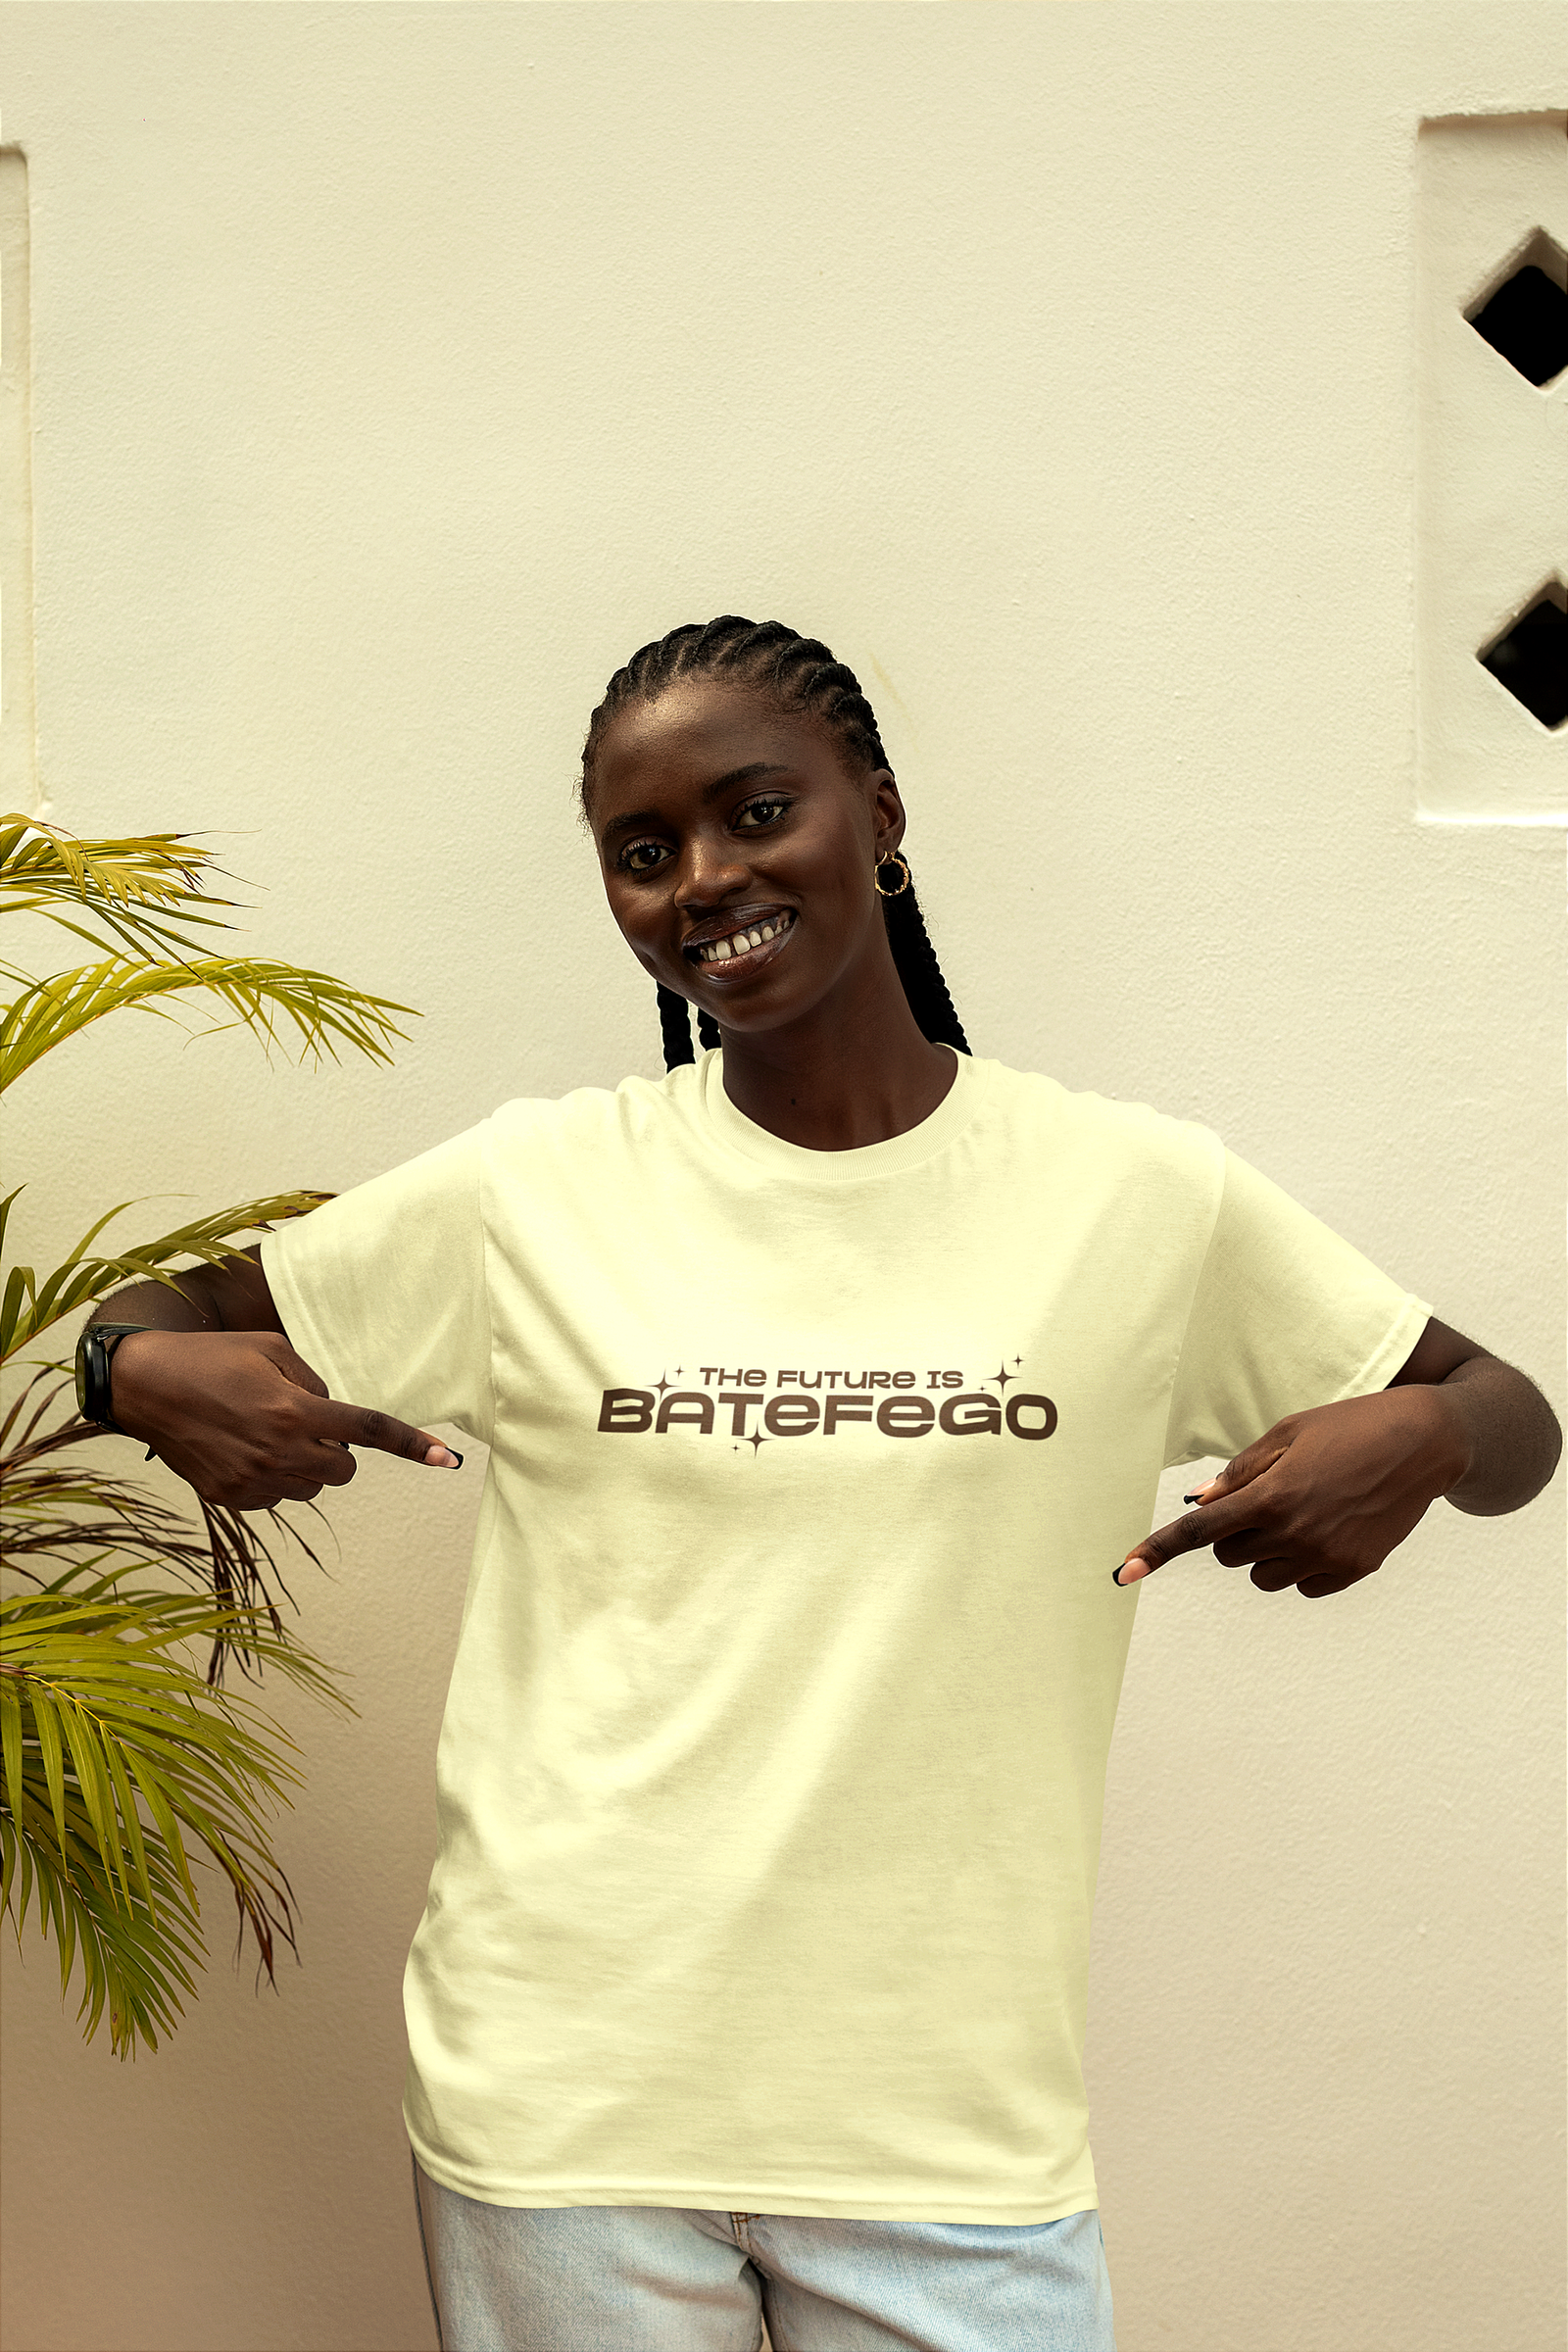 Batefego The Future is Batefego TShirt African Streetwear Fashion